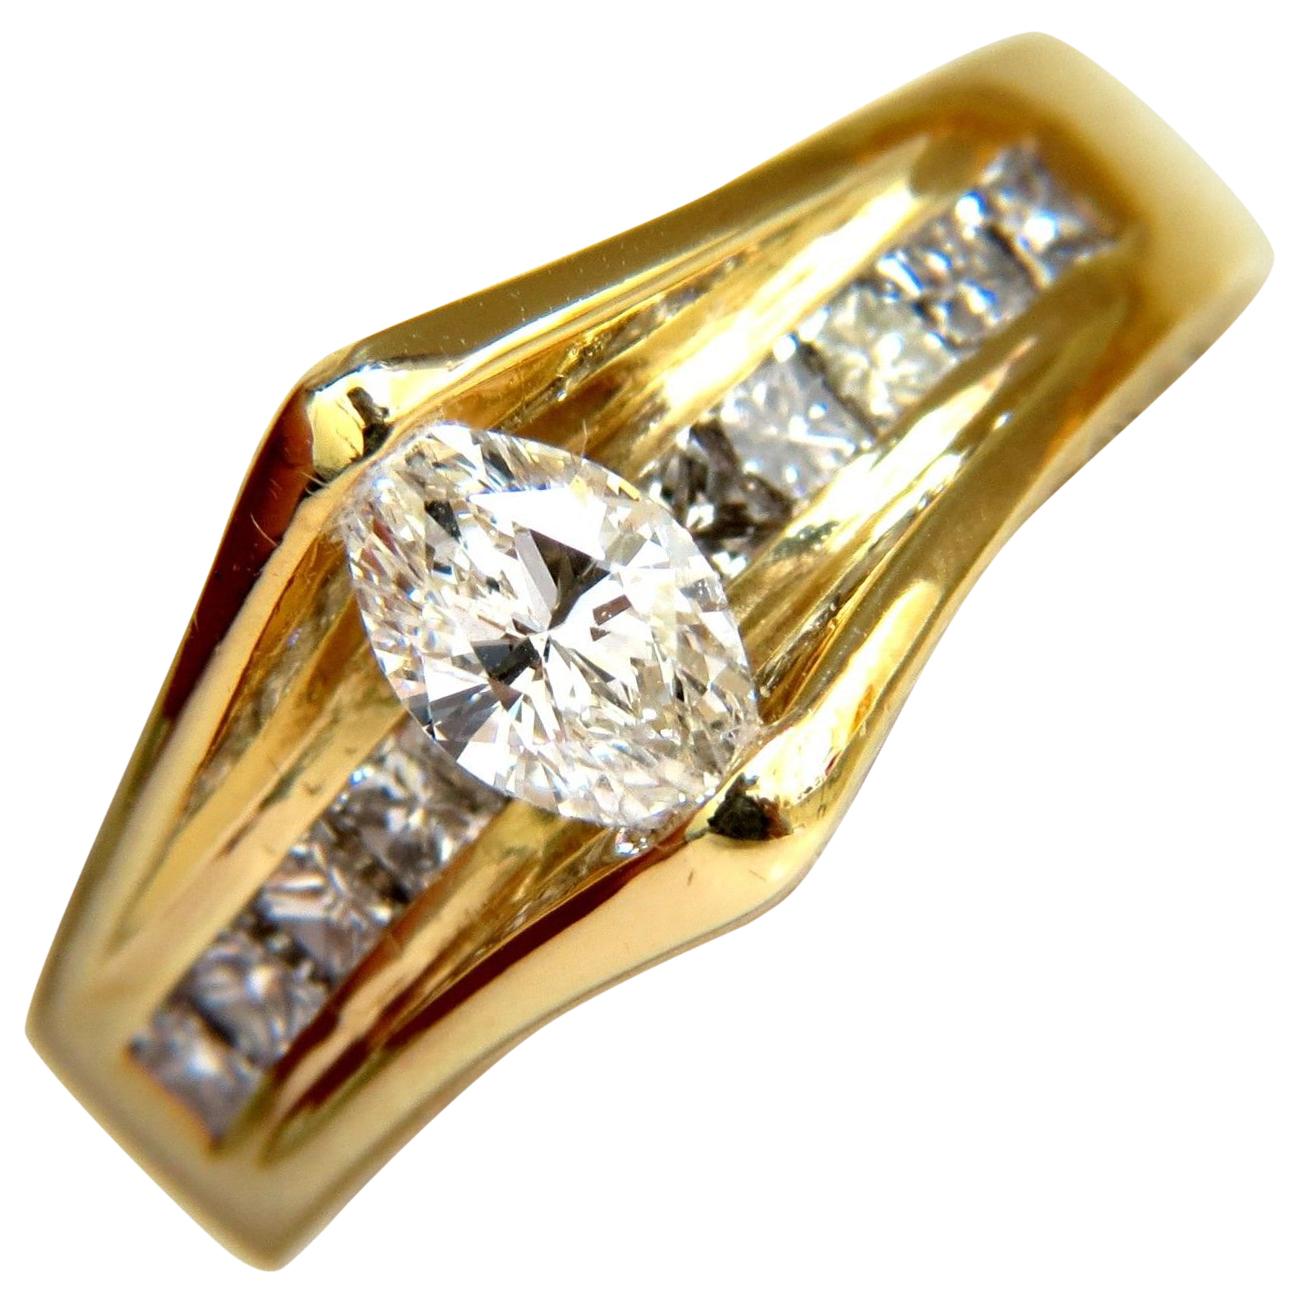 1.12 Carat 18 Karat 1.12 Carat Diamonds Tension Top Class Mod Deco Handmade Ring For Sale